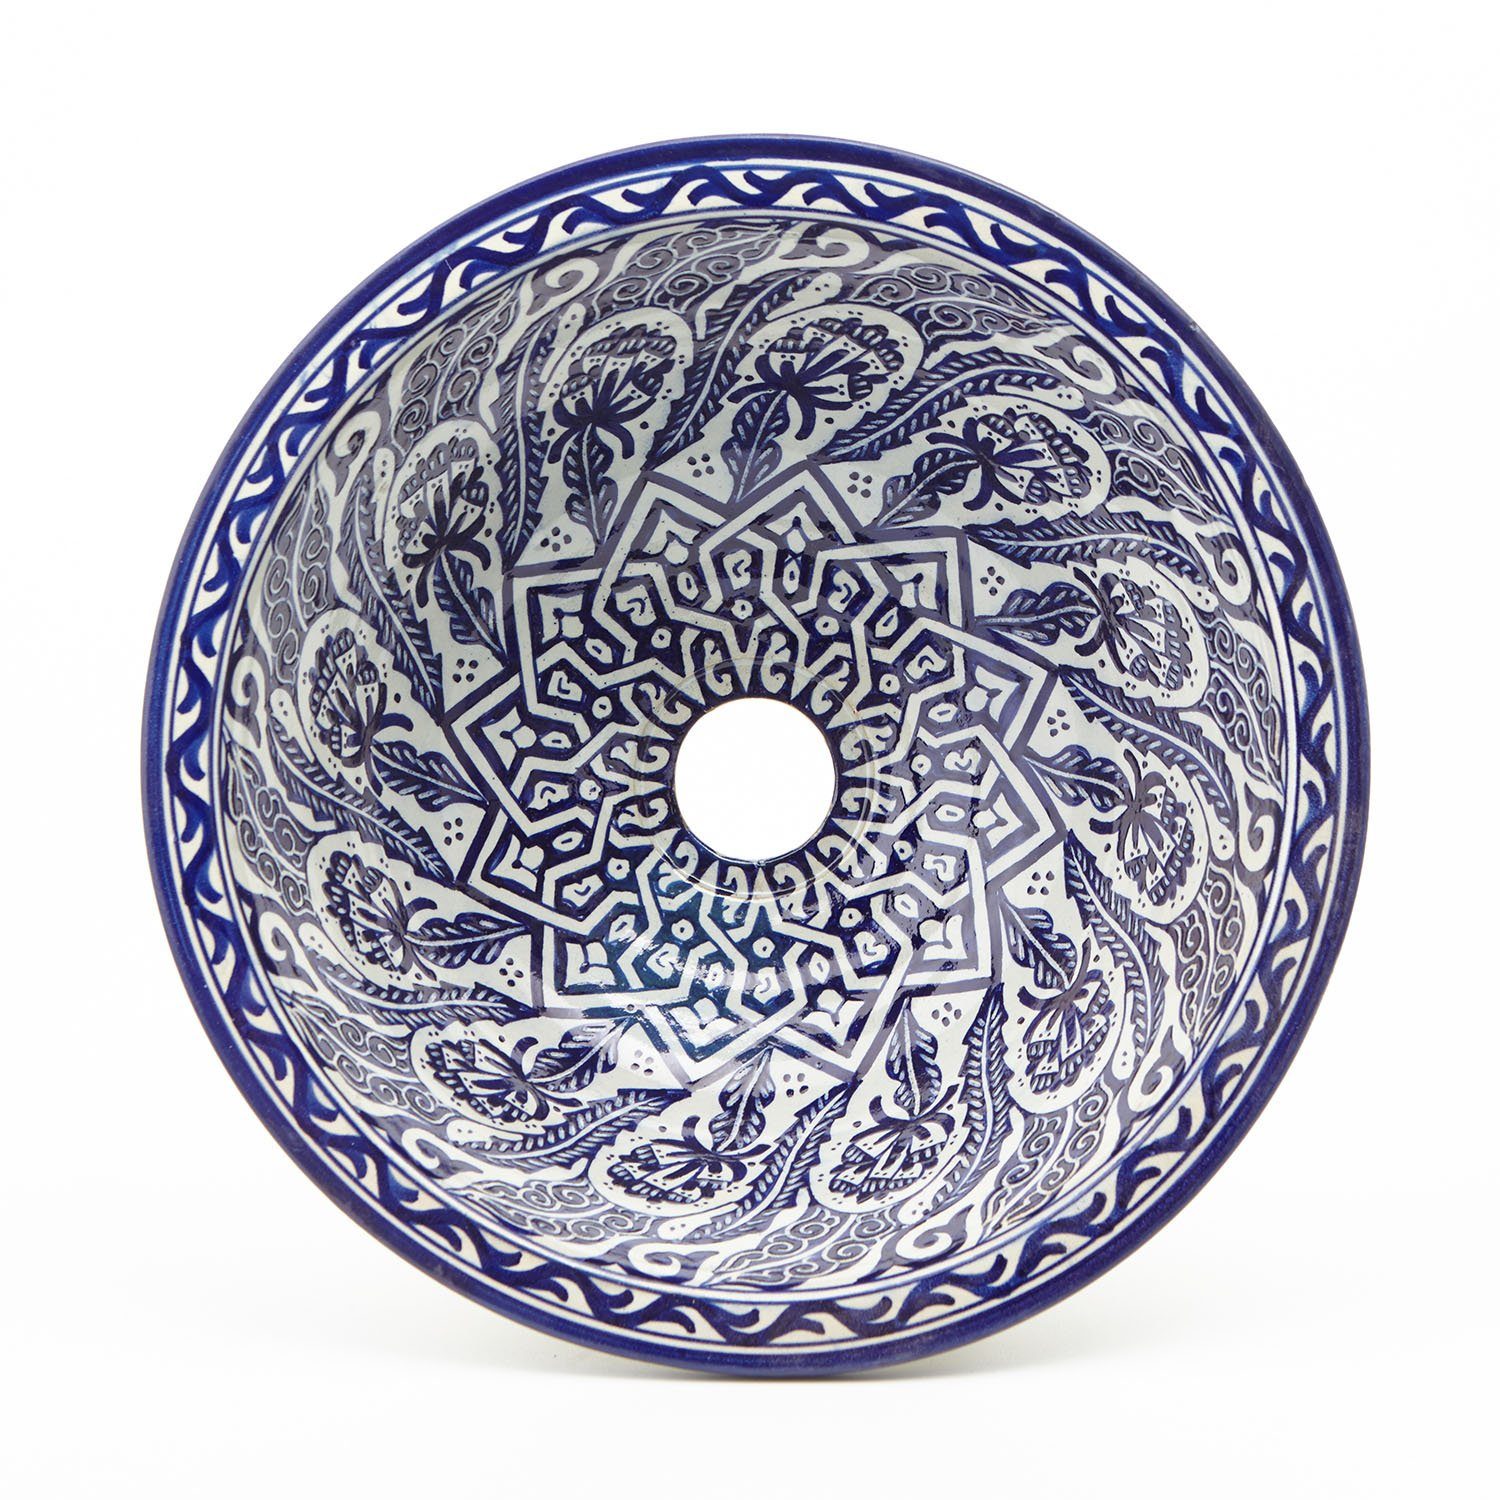 Casa Moro Waschbecken Orientalisches Keramik-Waschbecken Fes80 Ø 35 cm blau  weiß rund, Marokkanisches Handwaschbecken für Küche Badezimmer Gäste-Bad,  Einfach schöner Wohnen, WB35280, Handmade